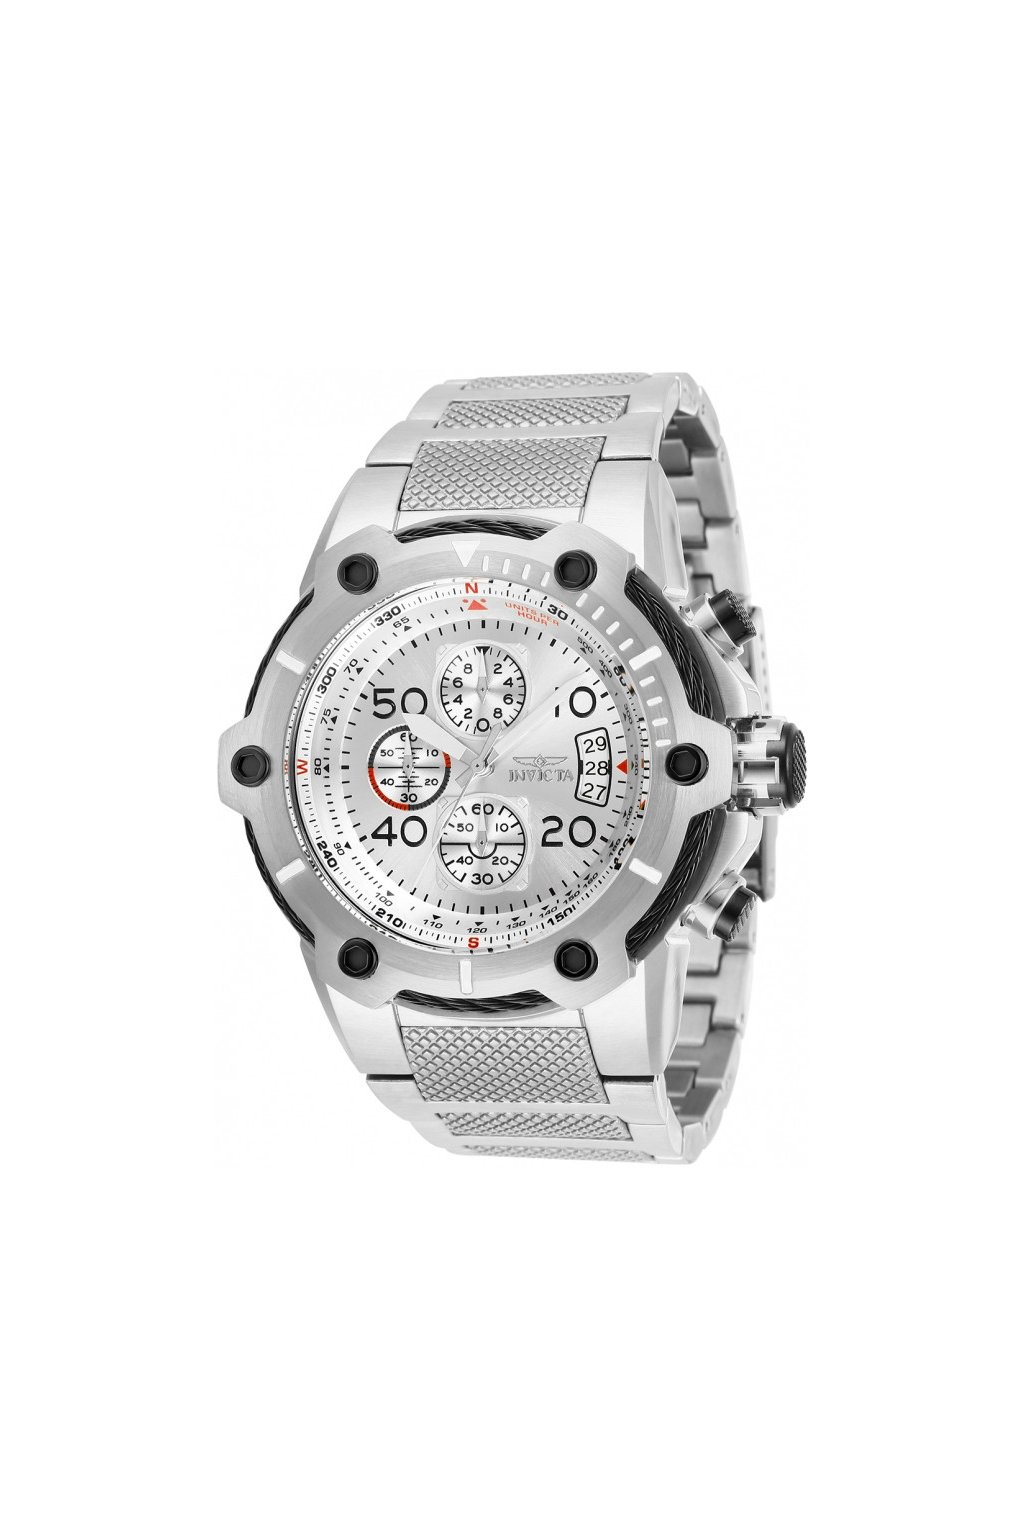 Pánské hodinky Invicta Reserve Bolt 28024  + Kufr Invicta v hodnotě 1000 Kč ZDARMA